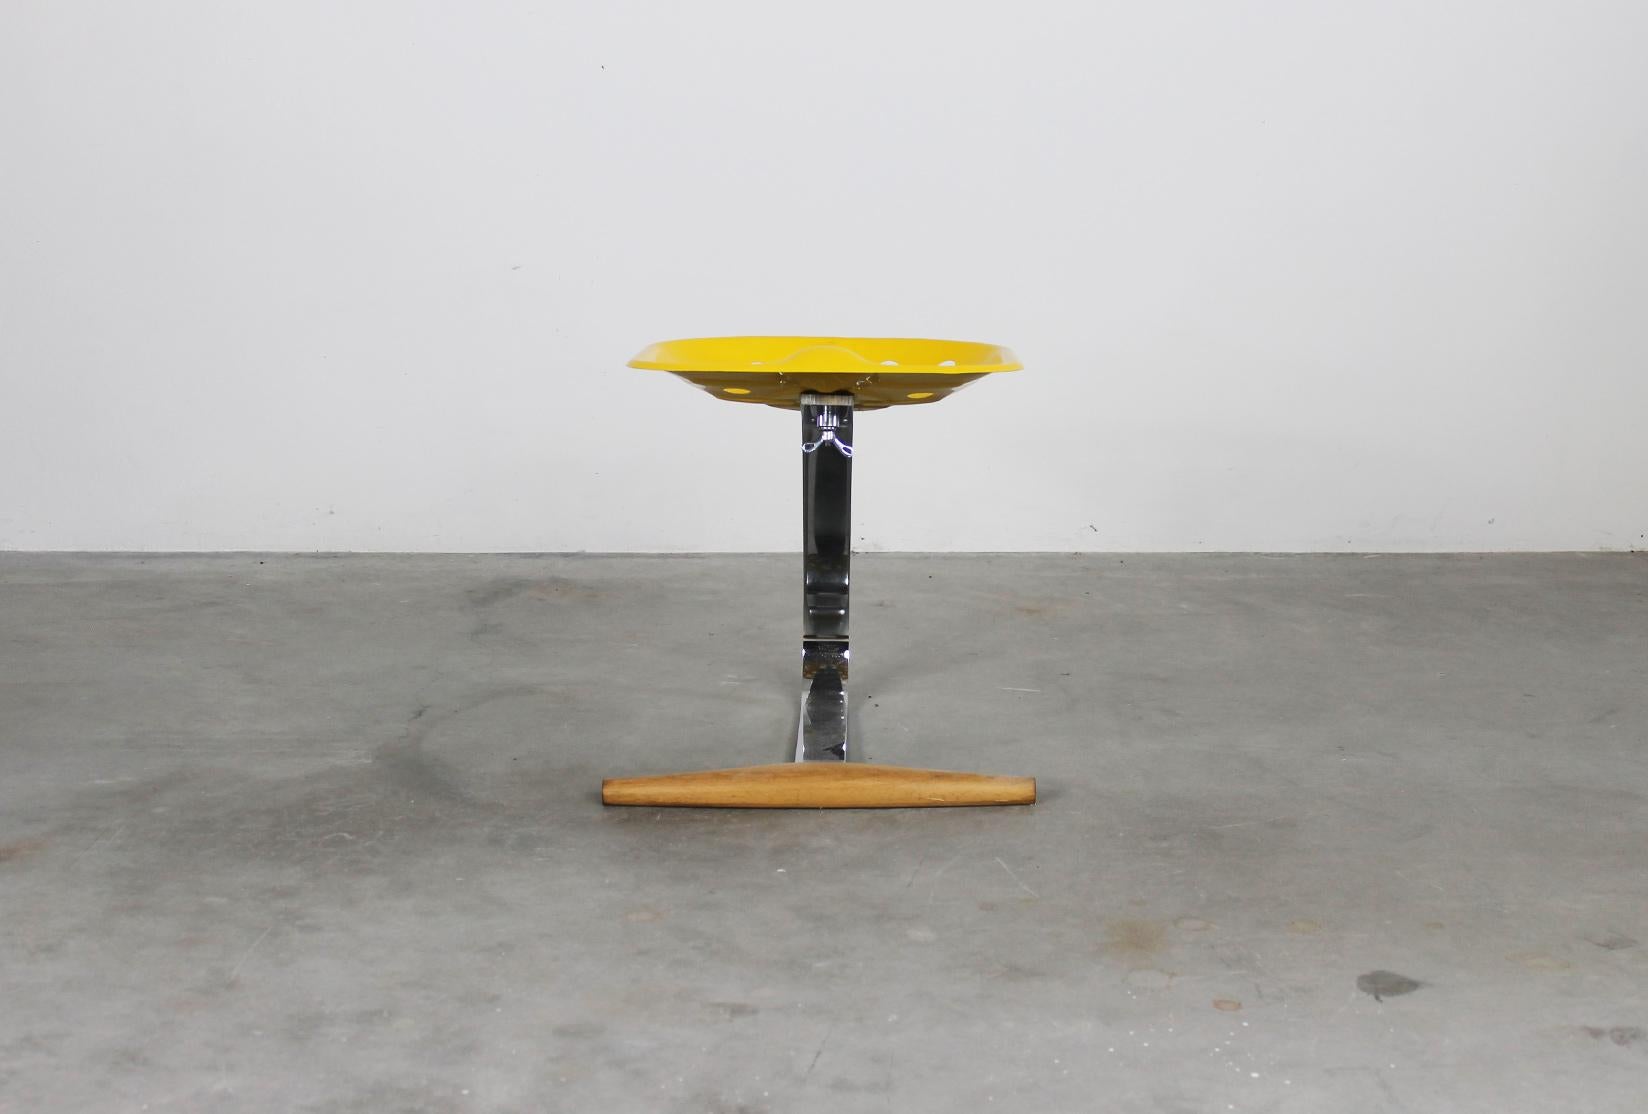 Mezzadro Hocker mit Stiel aus verchromtem Stahl, Sitz aus gelb lackiertem Metall und Fußstütze aus Buchenholz. 
1957 von Achille und Piergiacomo Castiglioni entworfen und in den 1970er Jahren von Zanotta hergestellt.

1970 bringt Zanotta den